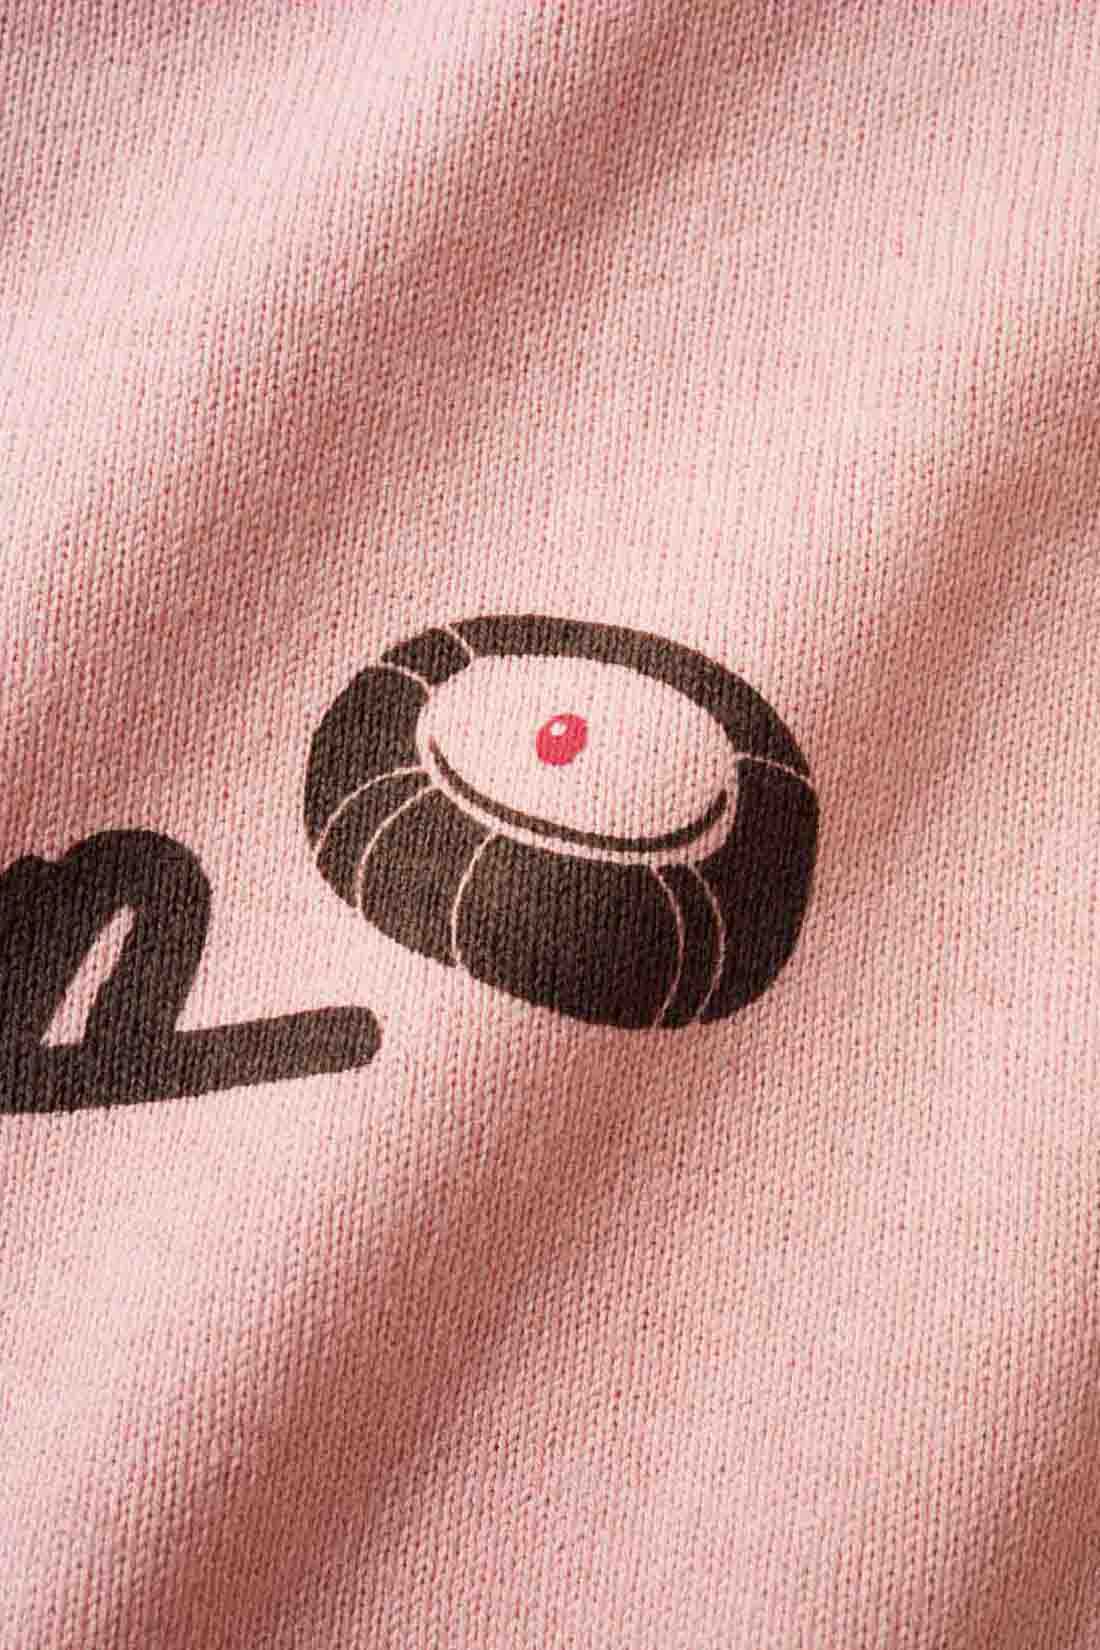 Real Stock|Live love cottonプロジェクト リブ イン コンフォート神戸のベーカリーハラダのパンさんとつくったオーガニックコットンのレトロかわいいTシャツ〈ベビーピンク〉|バックプリントには定番商品 「シャーベットクリーム」 のイラストも。